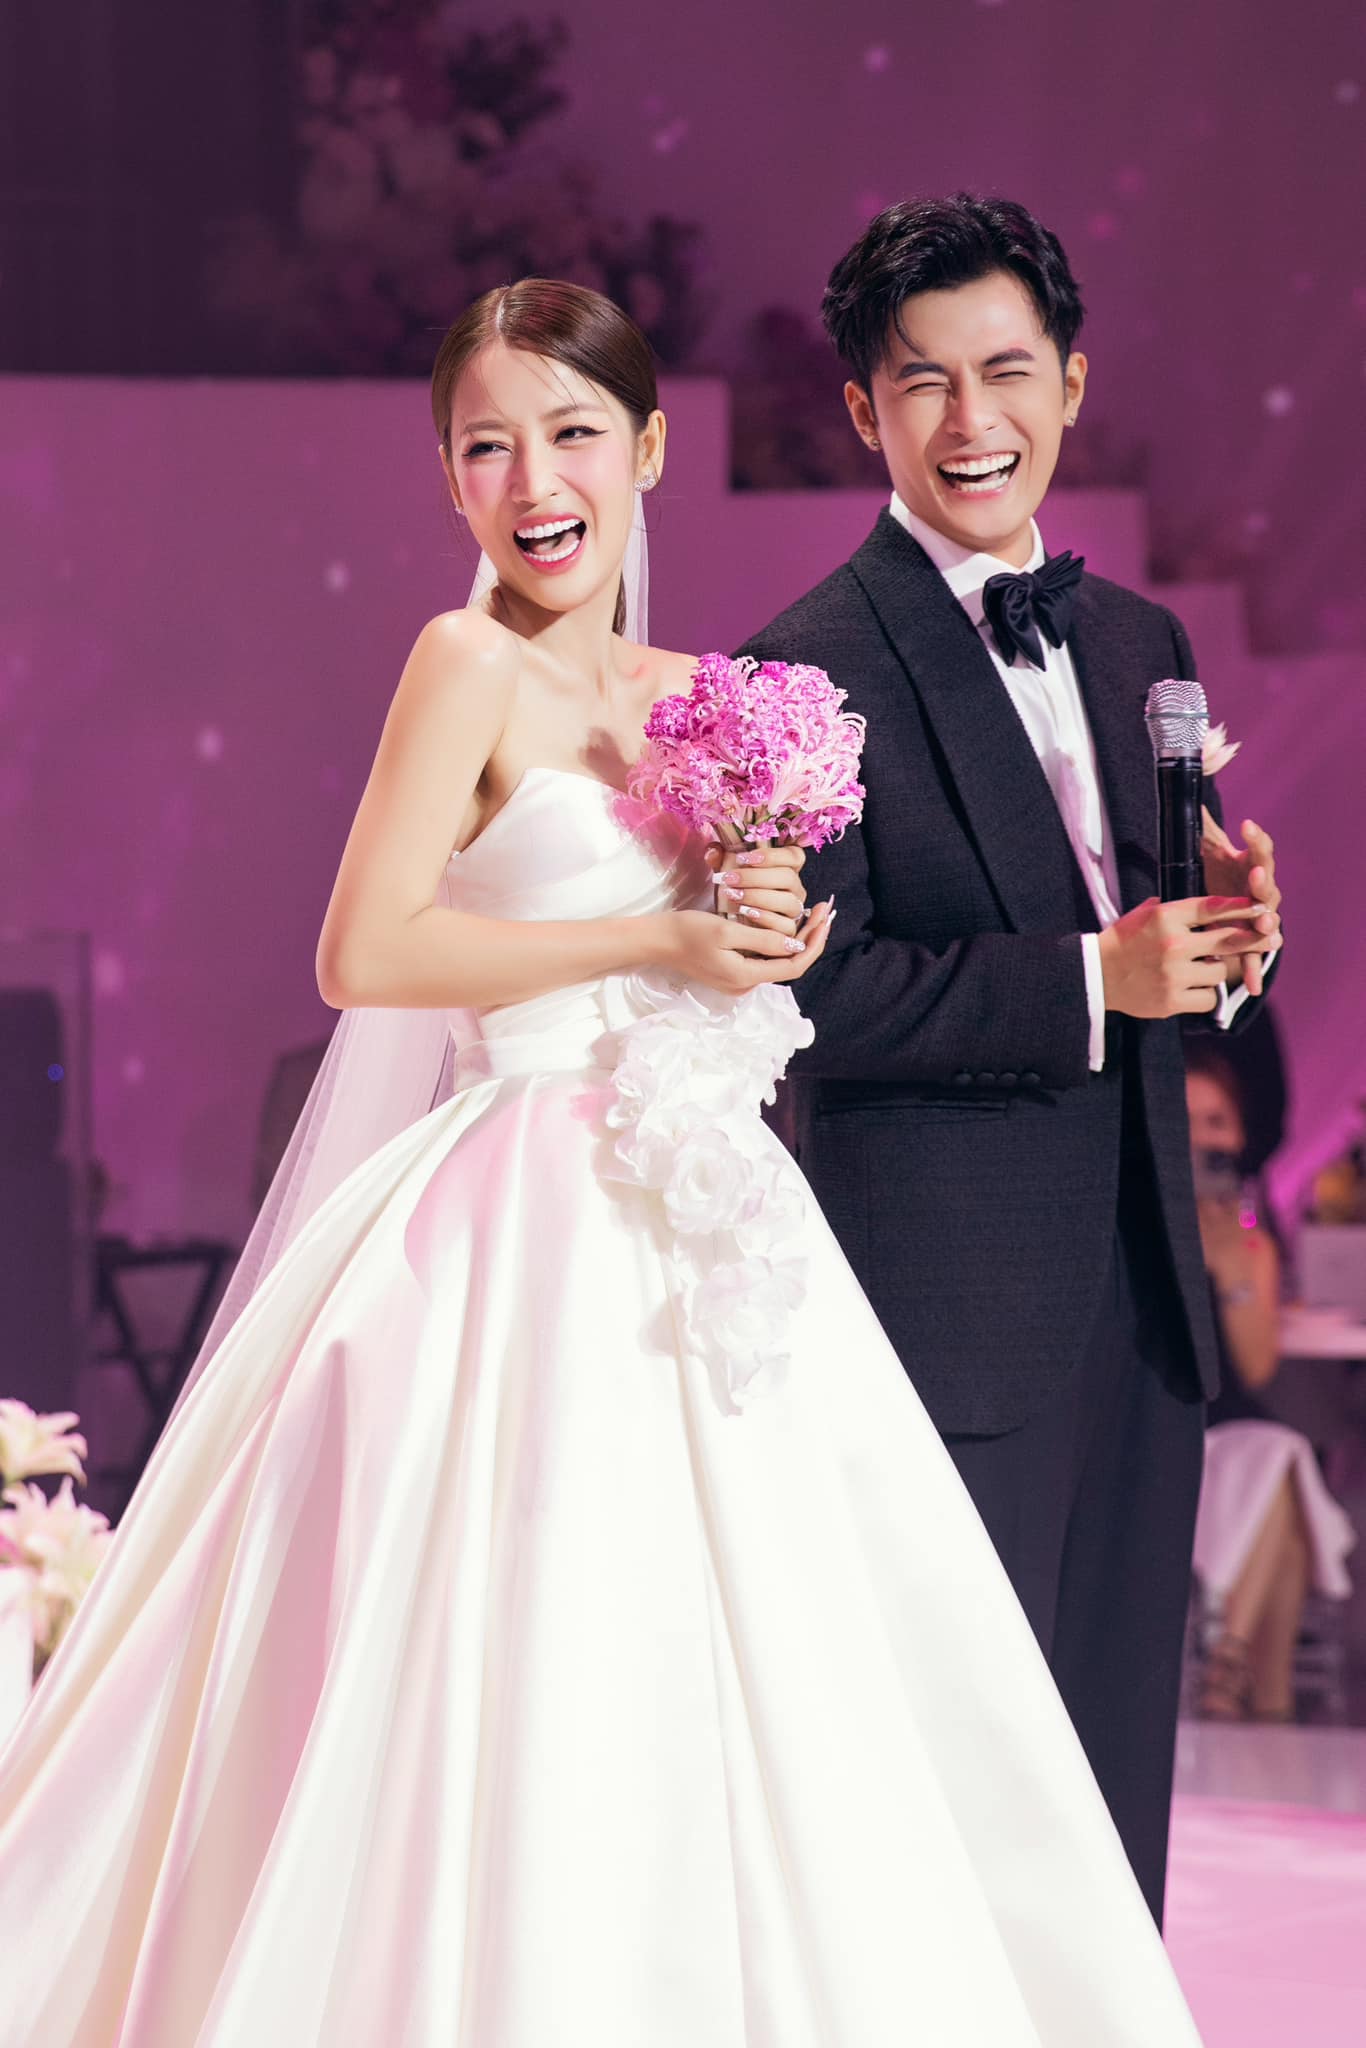 Đám cưới hạnh phúc của Puka và Gin Tuấn Kiệt bỗng hóa 'bi kịch gia đình' trên MXH Trung Quốc, chuyện gì đây? - ảnh 1